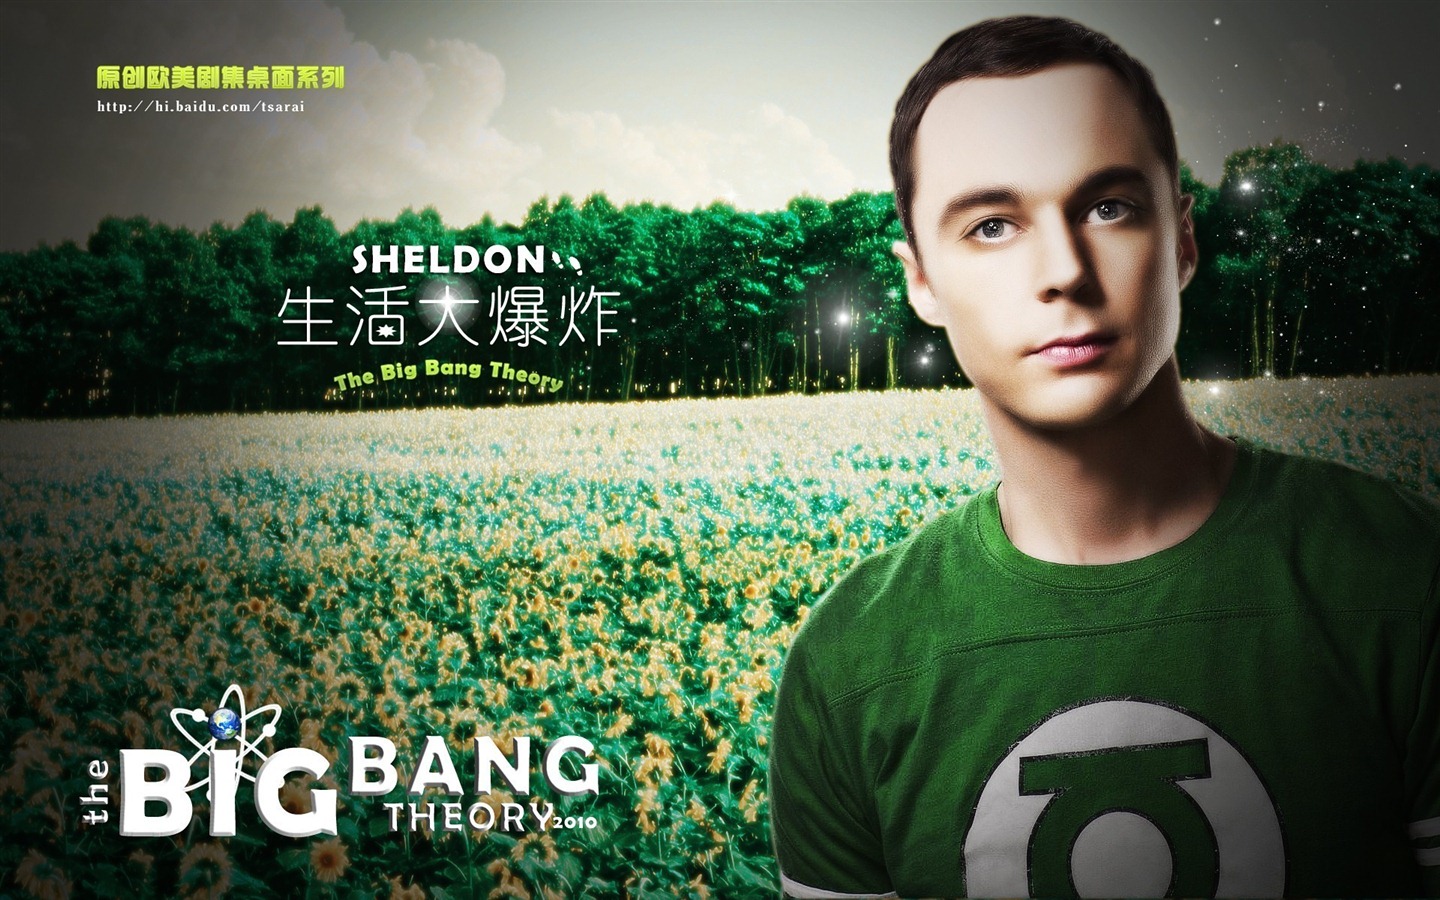 The Big Bang Theory 生活大爆炸電視劇高清壁紙 #16 - 1440x900